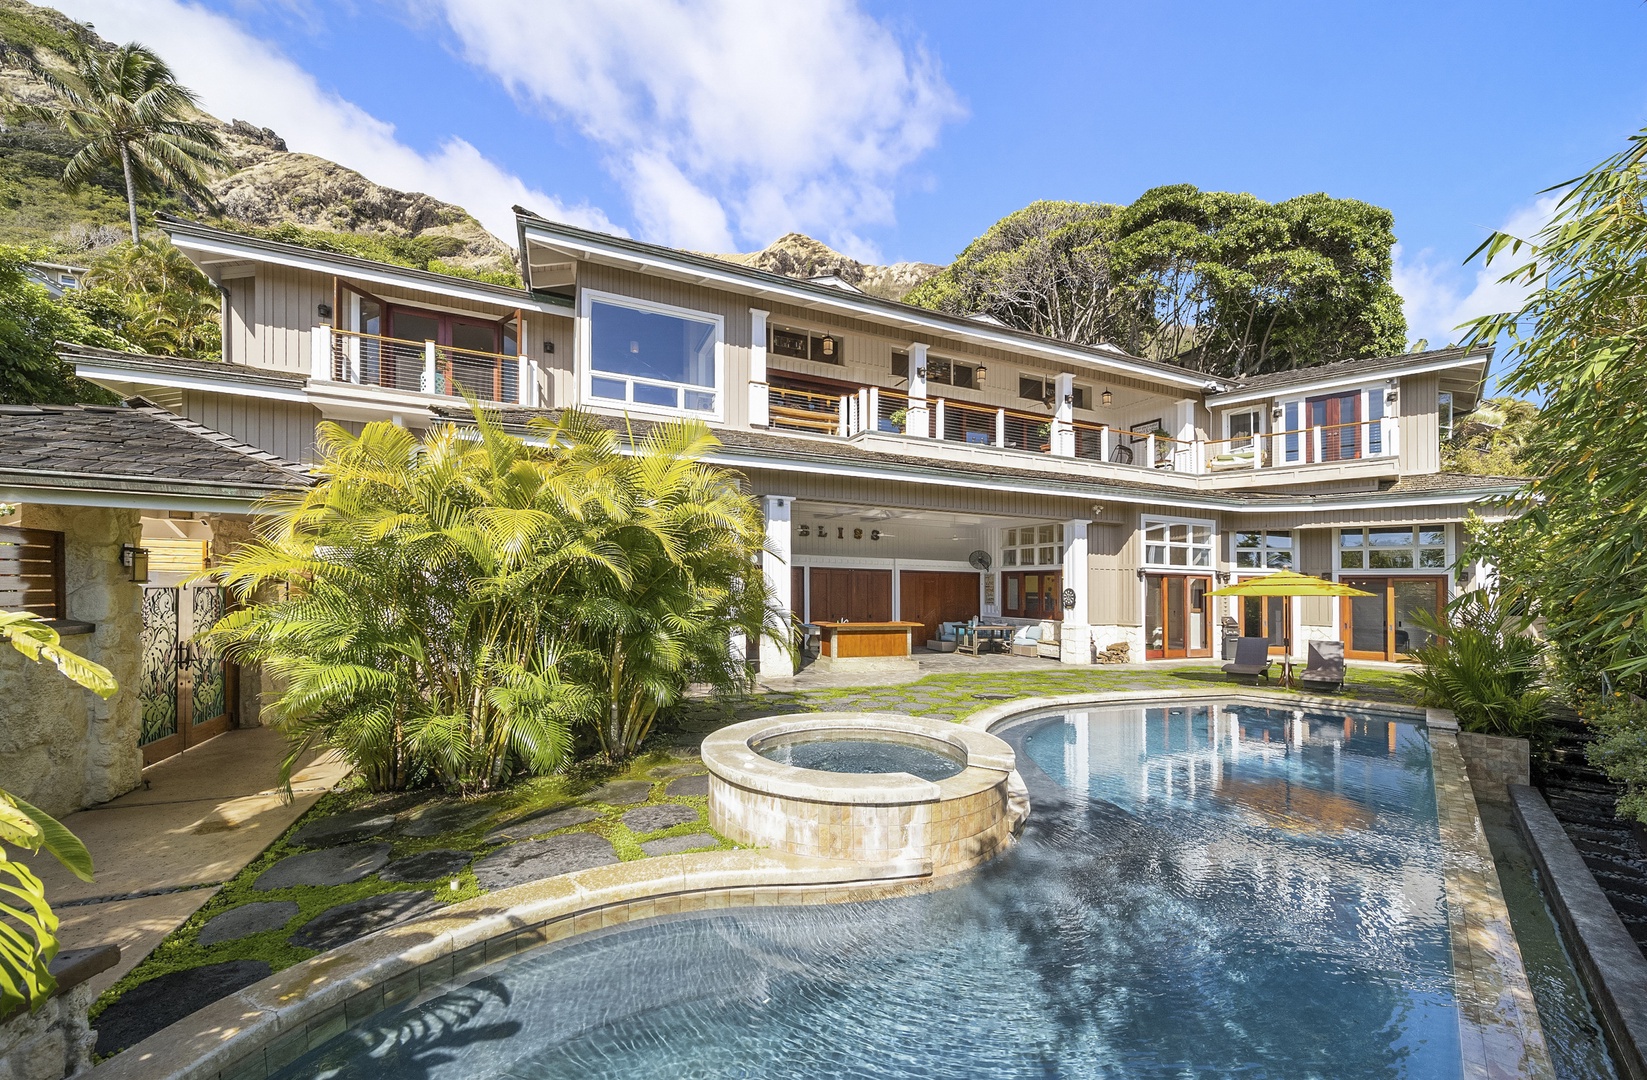 Kailua Vacation Rentals, Lanikai Villa* - Lavish, tranquil living at Lanikai Villa with private pool, hot tub, and so much more!